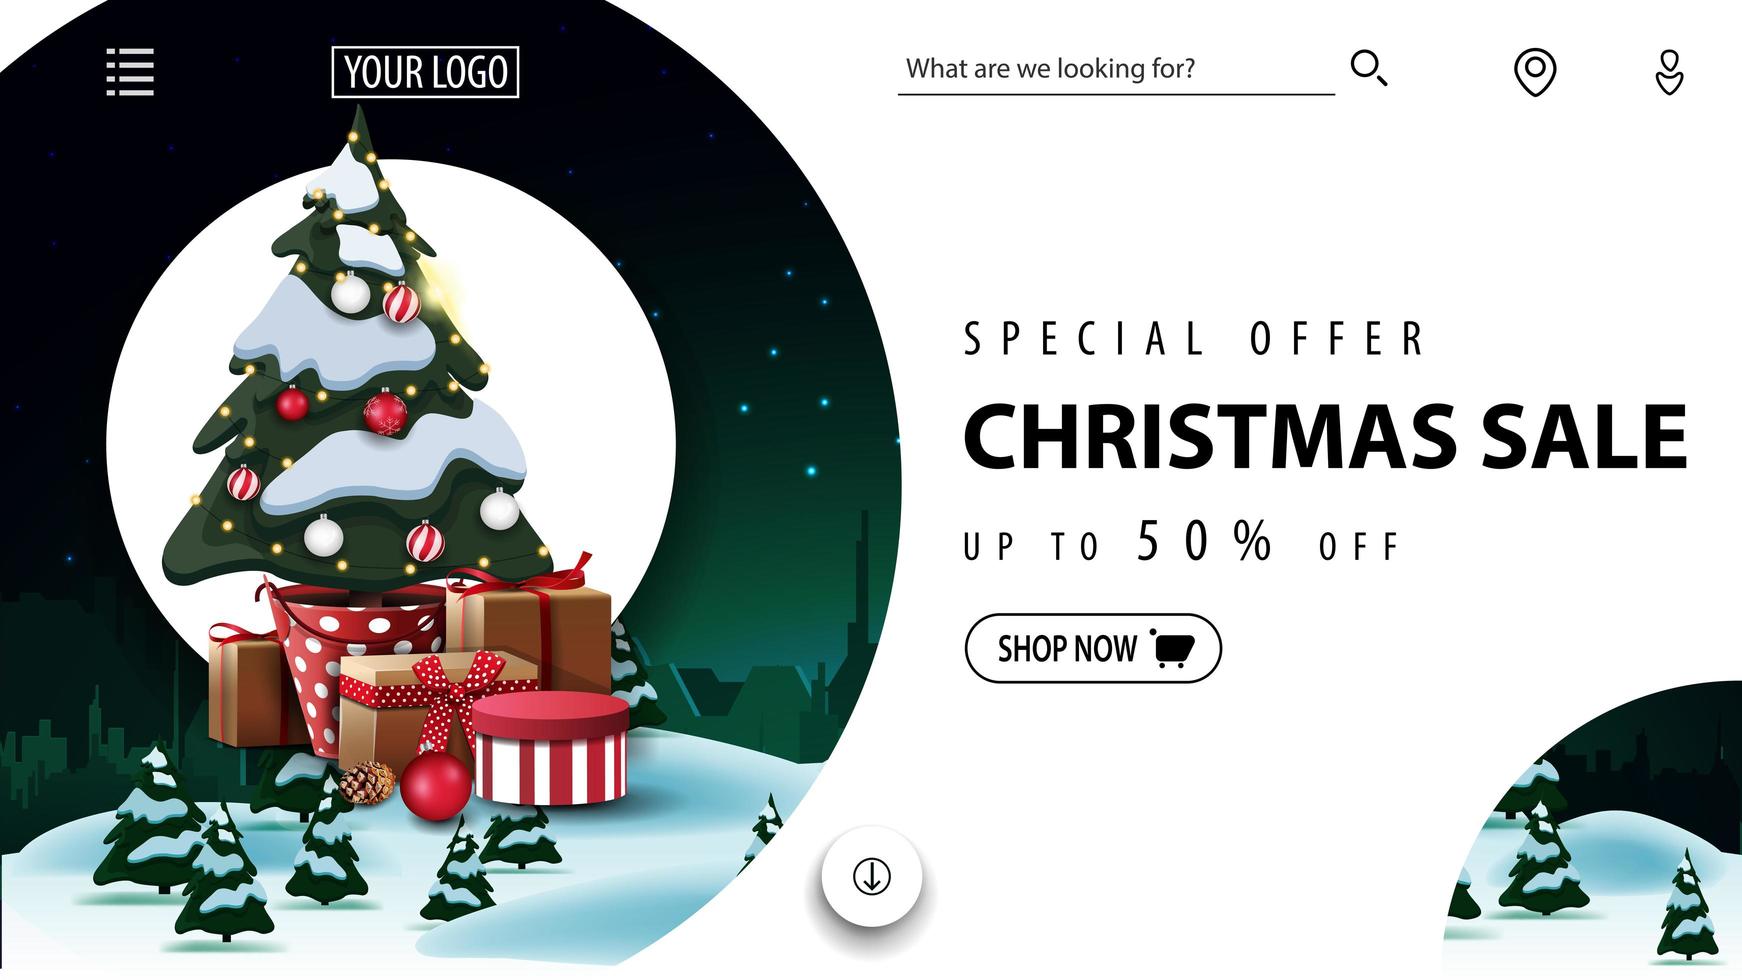 oferta especial, venta navideña, hasta 50 de descuento, hermoso sitio web enemigo con banner de descuento con paisaje invernal y árbol de navidad en una maceta con regalos vector